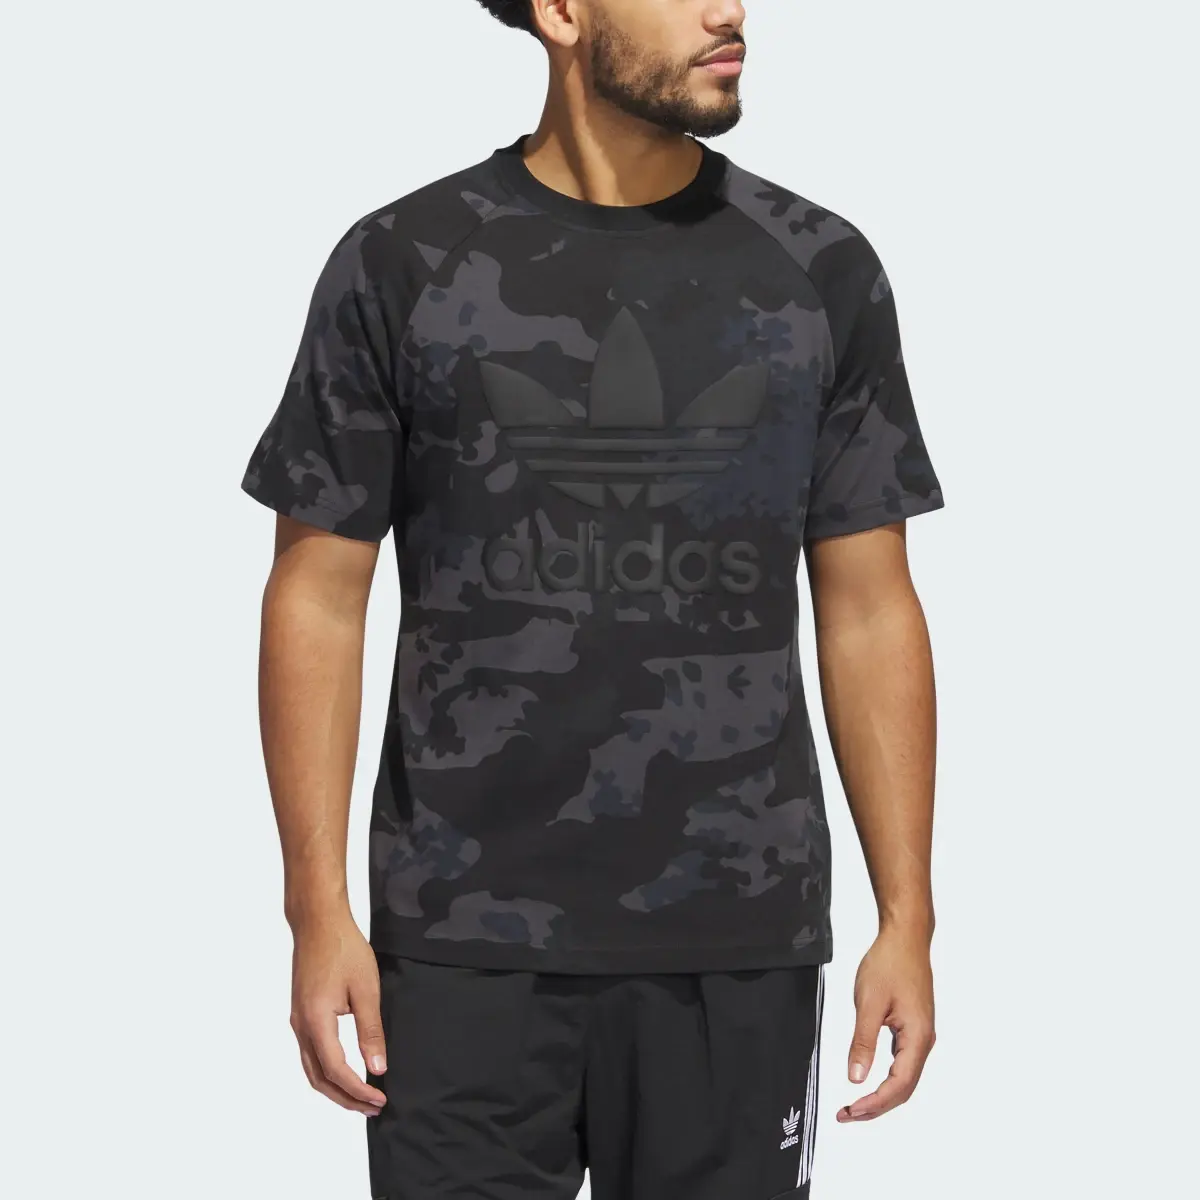 Adidas T-shirt Camo Trèfle. 1